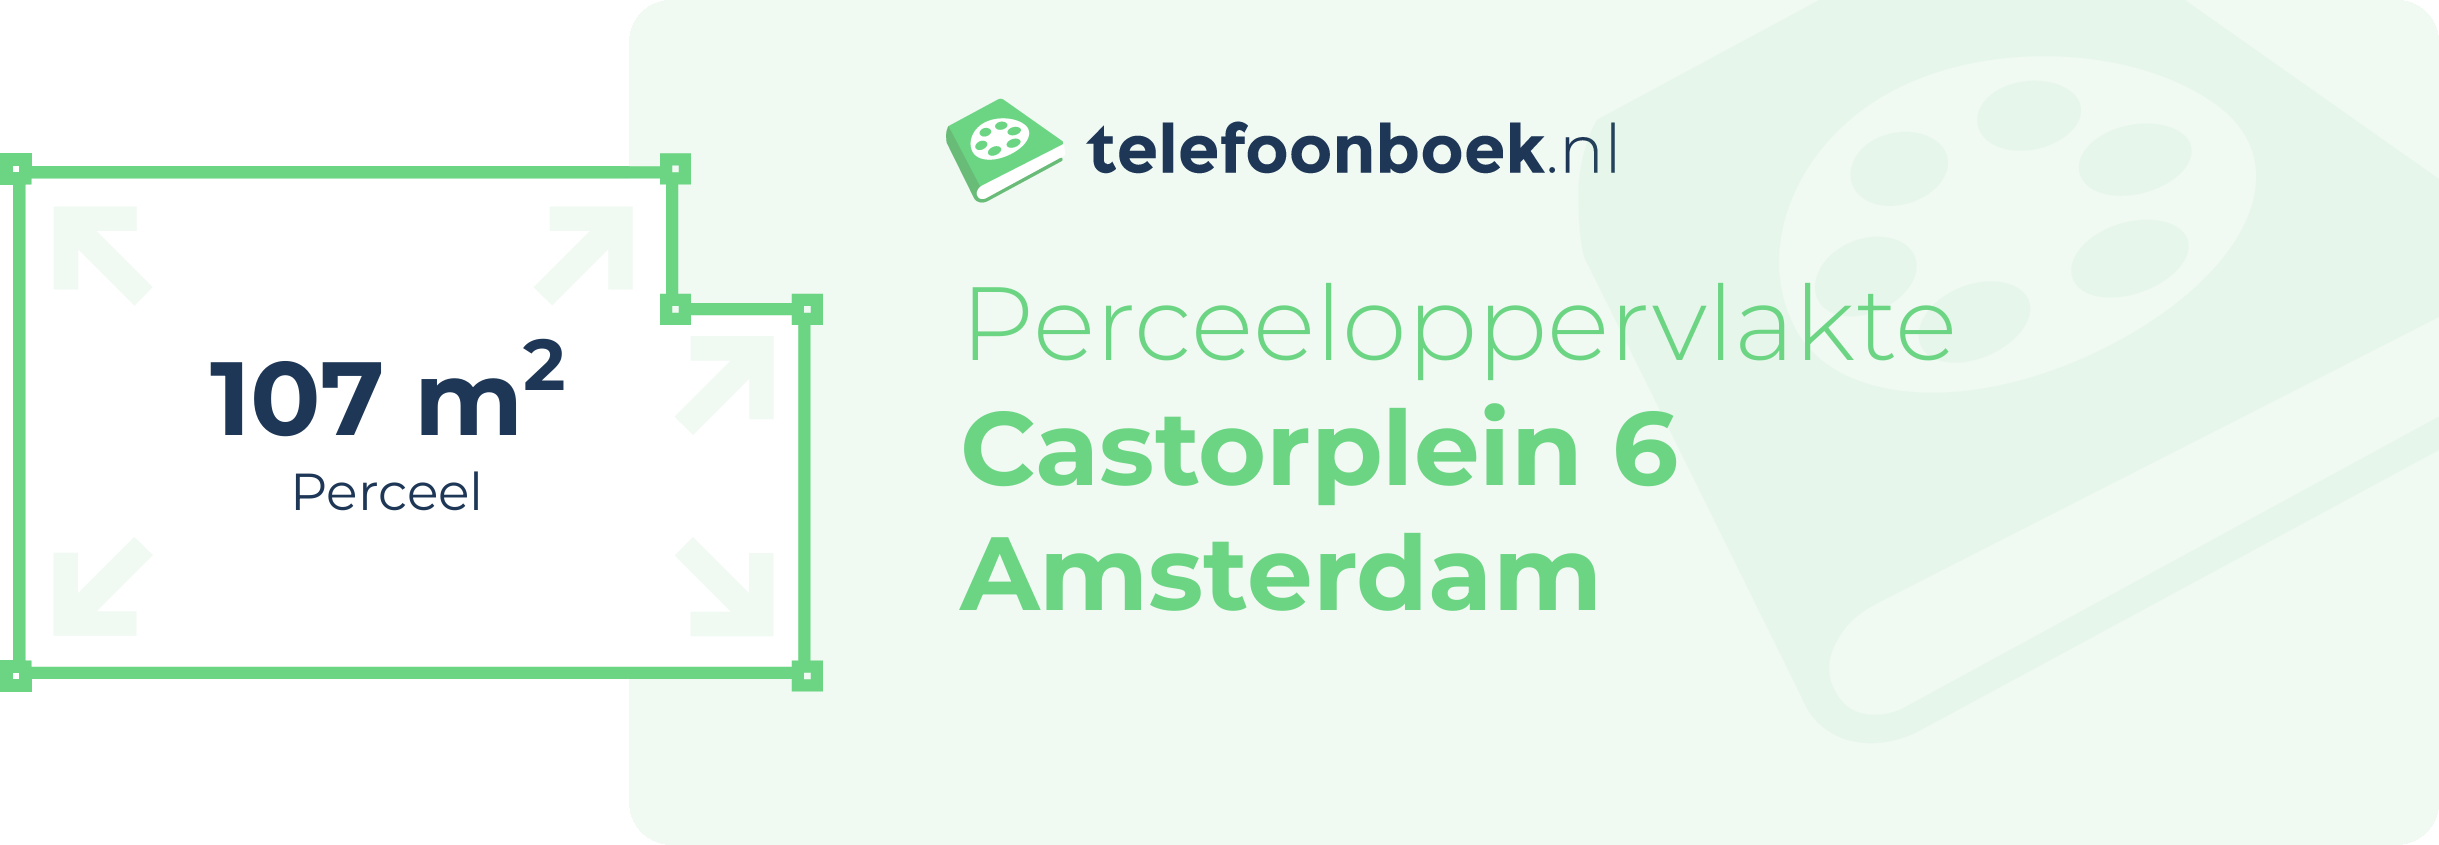 Perceeloppervlakte Castorplein 6 Amsterdam